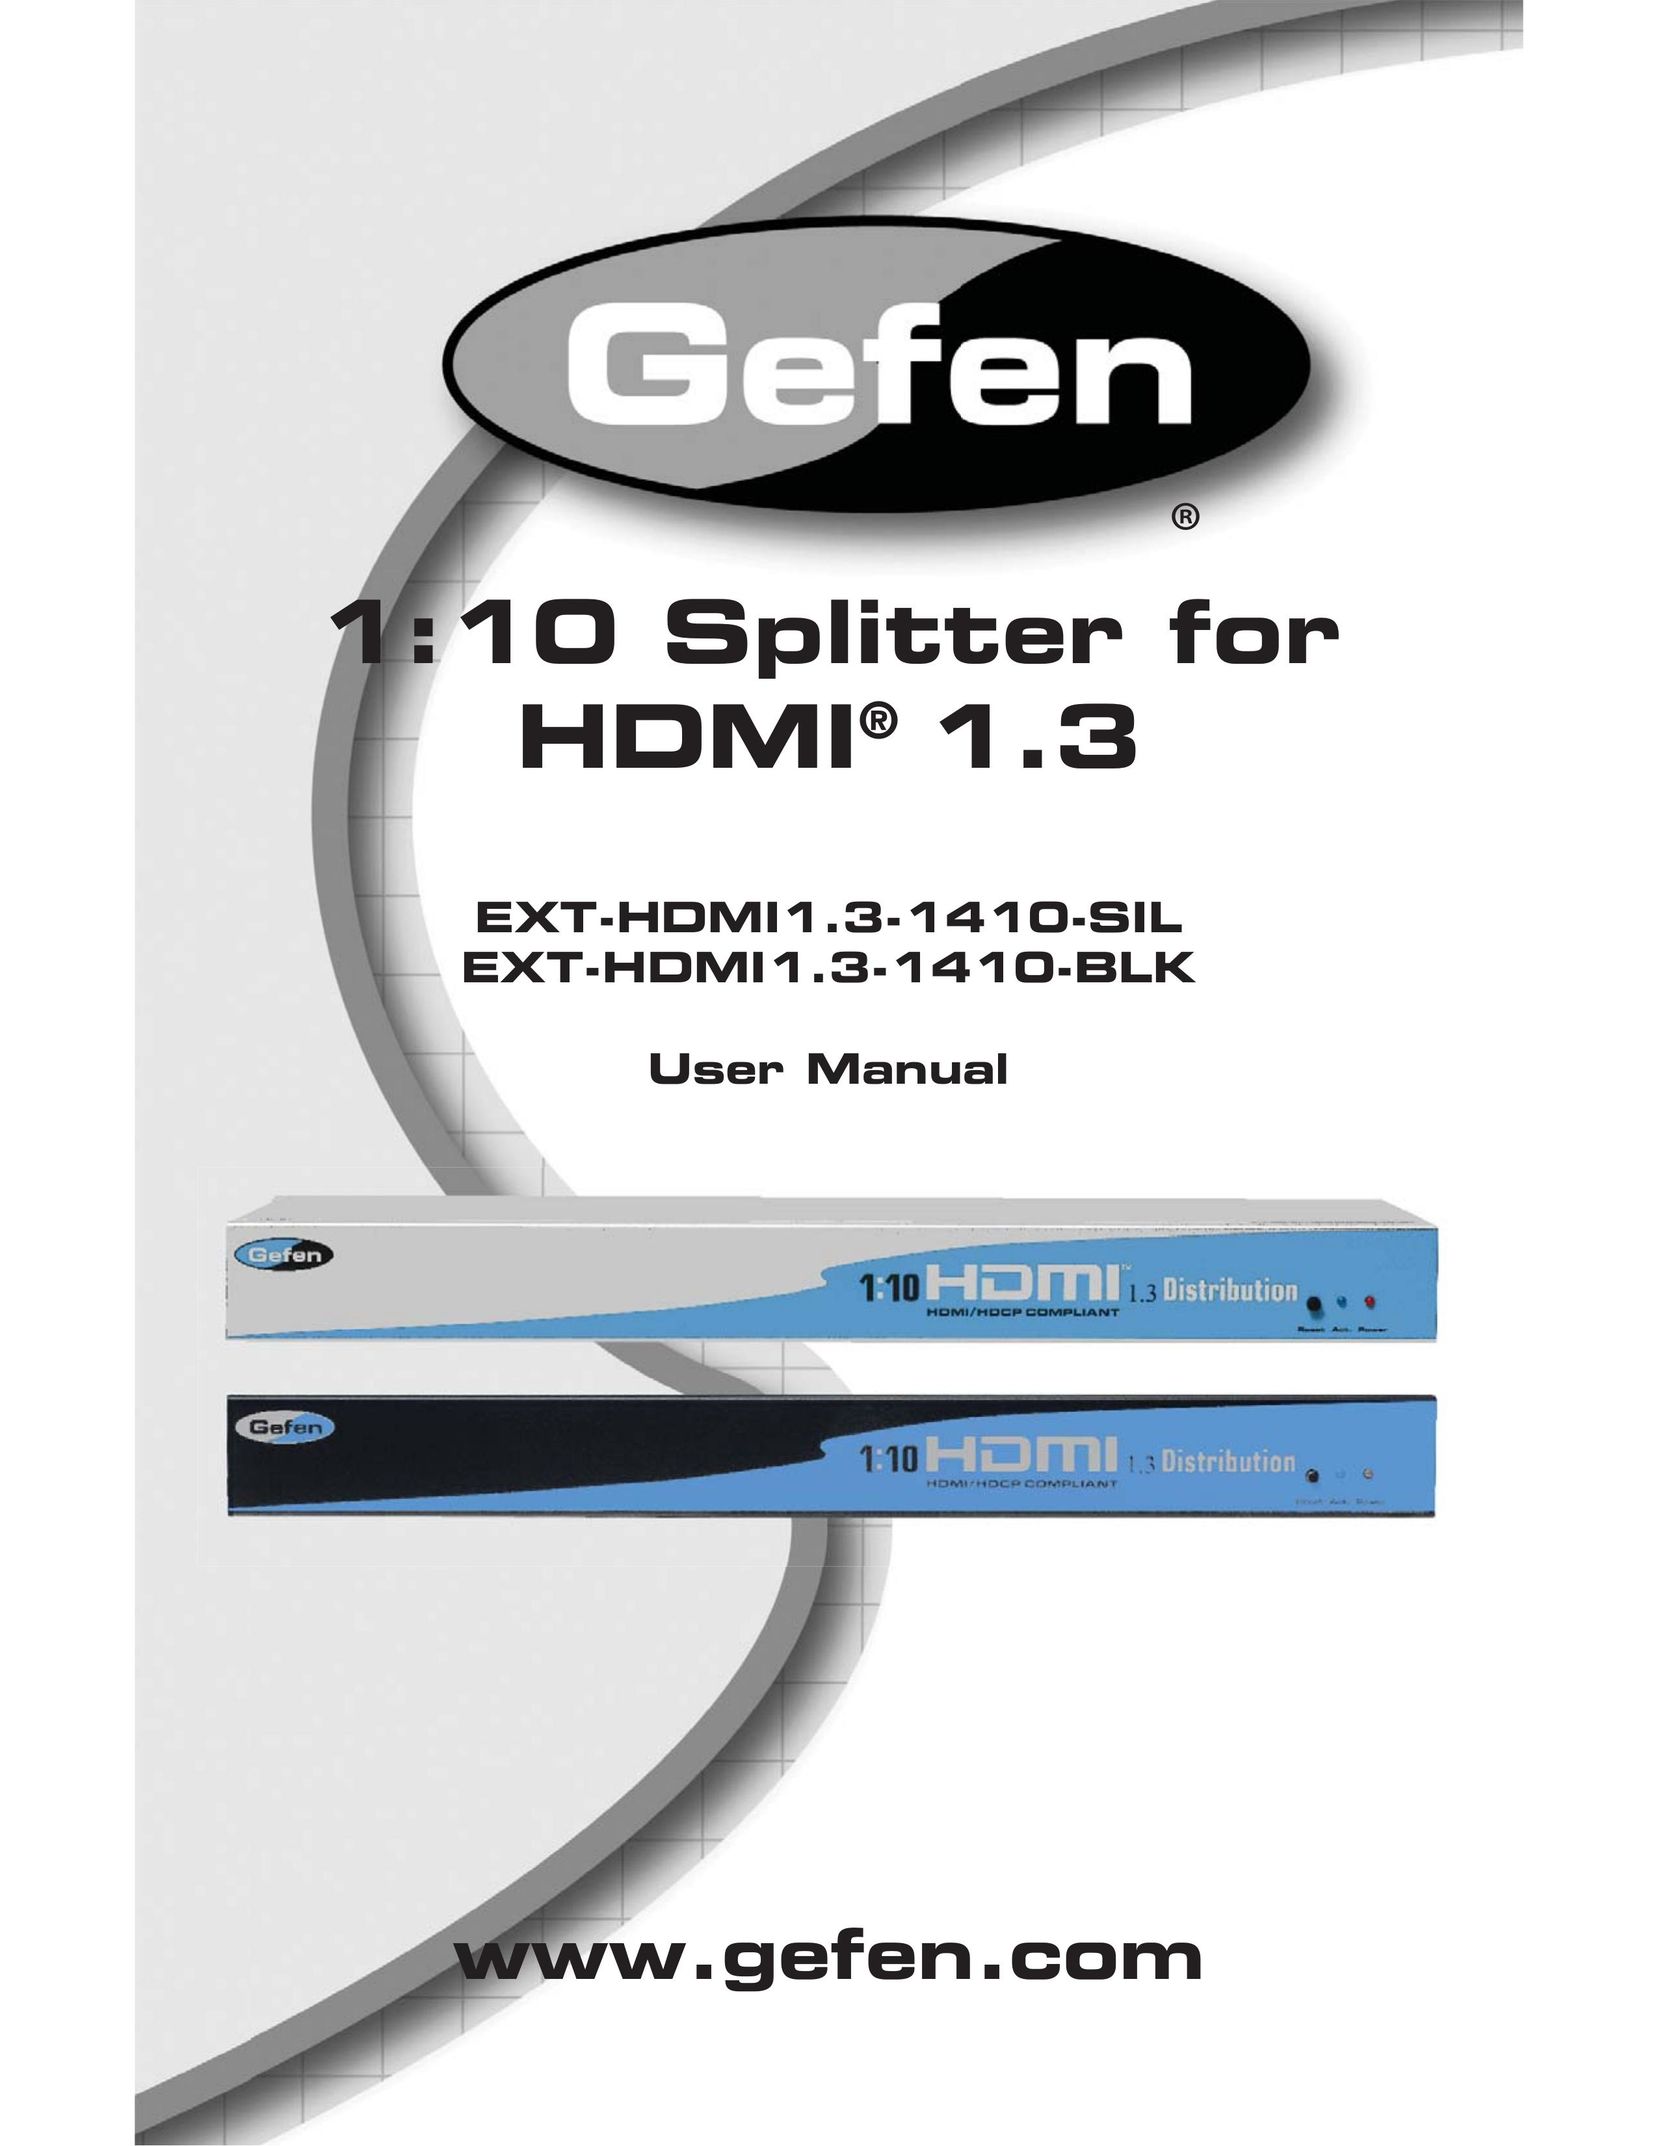 Gefen EXT-HDMI1.3-1410-BLK TV Cables User Manual